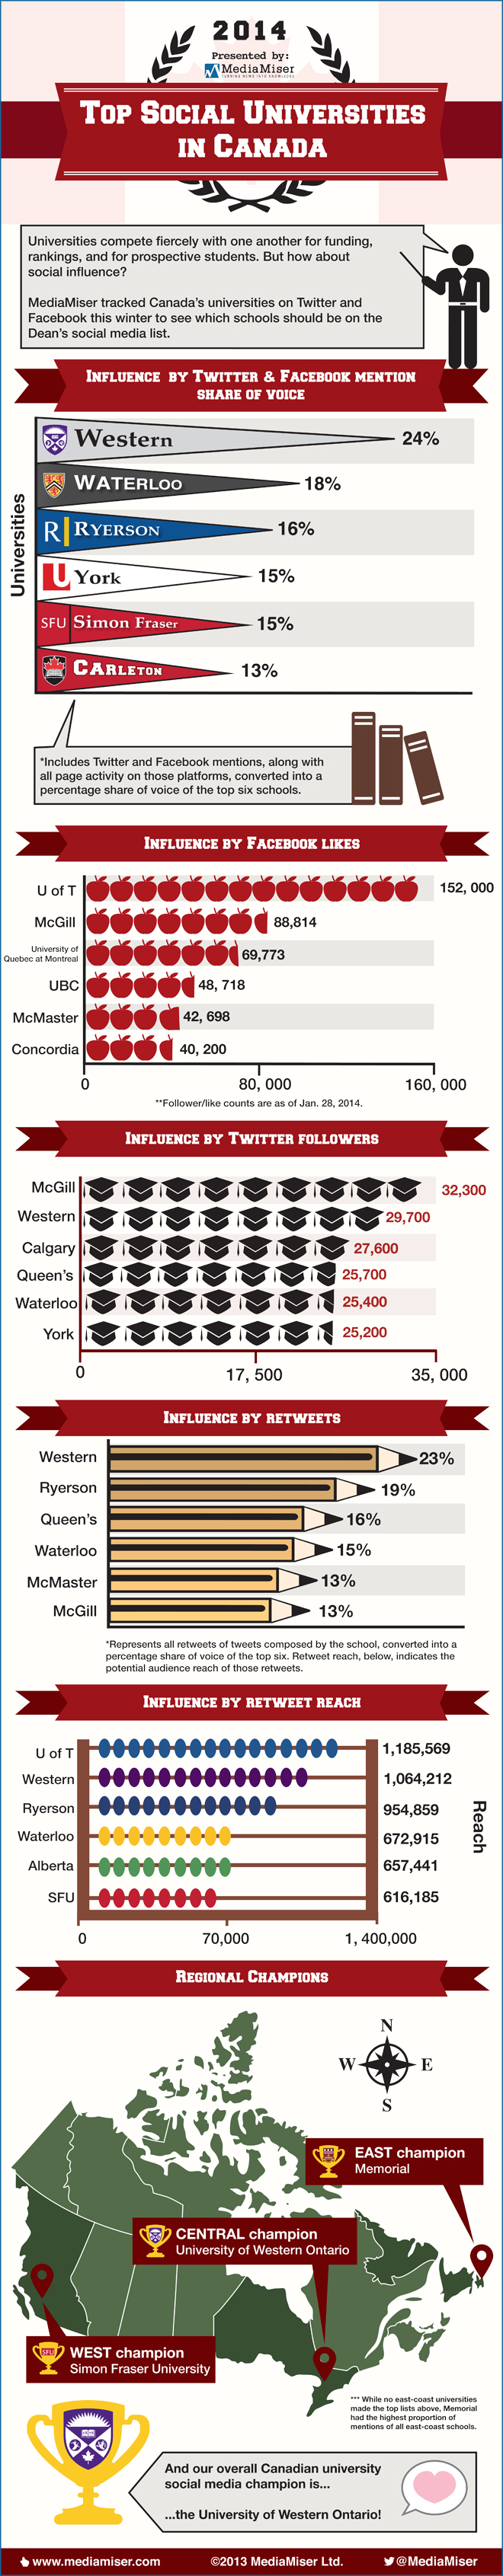 Top Social Universities in Canada